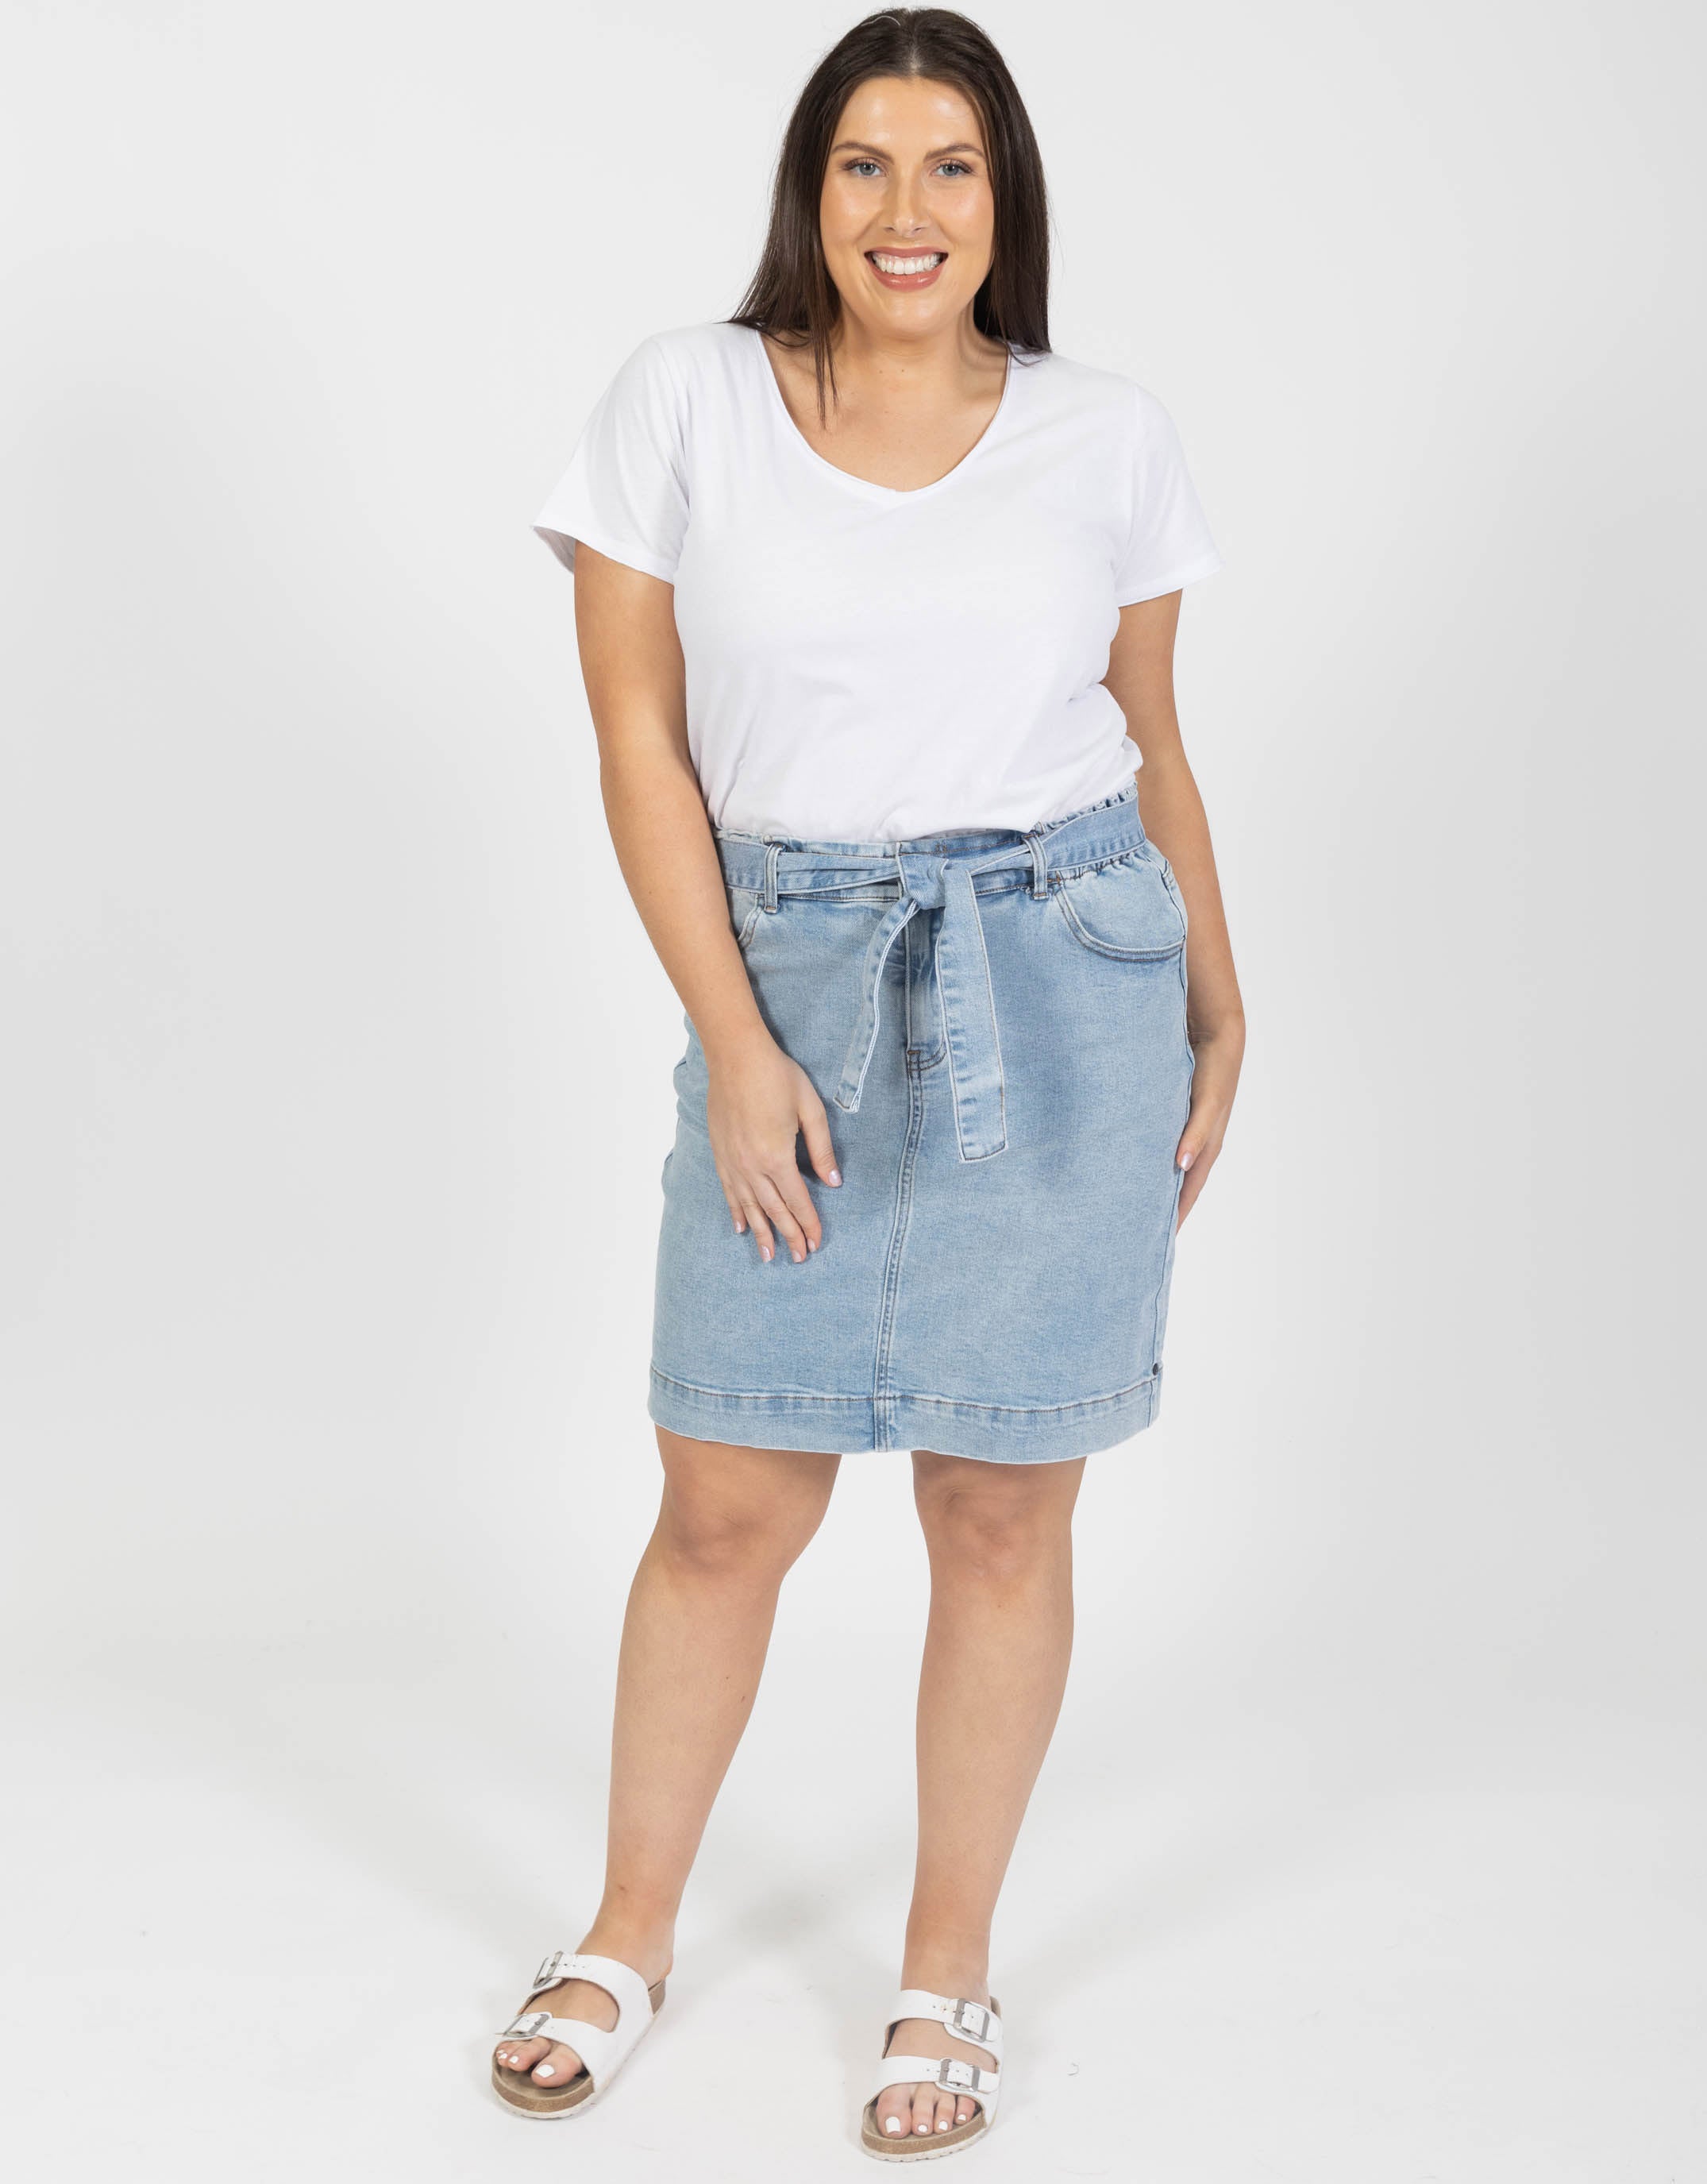 Elm Plus Size Gracie Denim Skirt - Mid Blue Denim | Plus Size Clothing